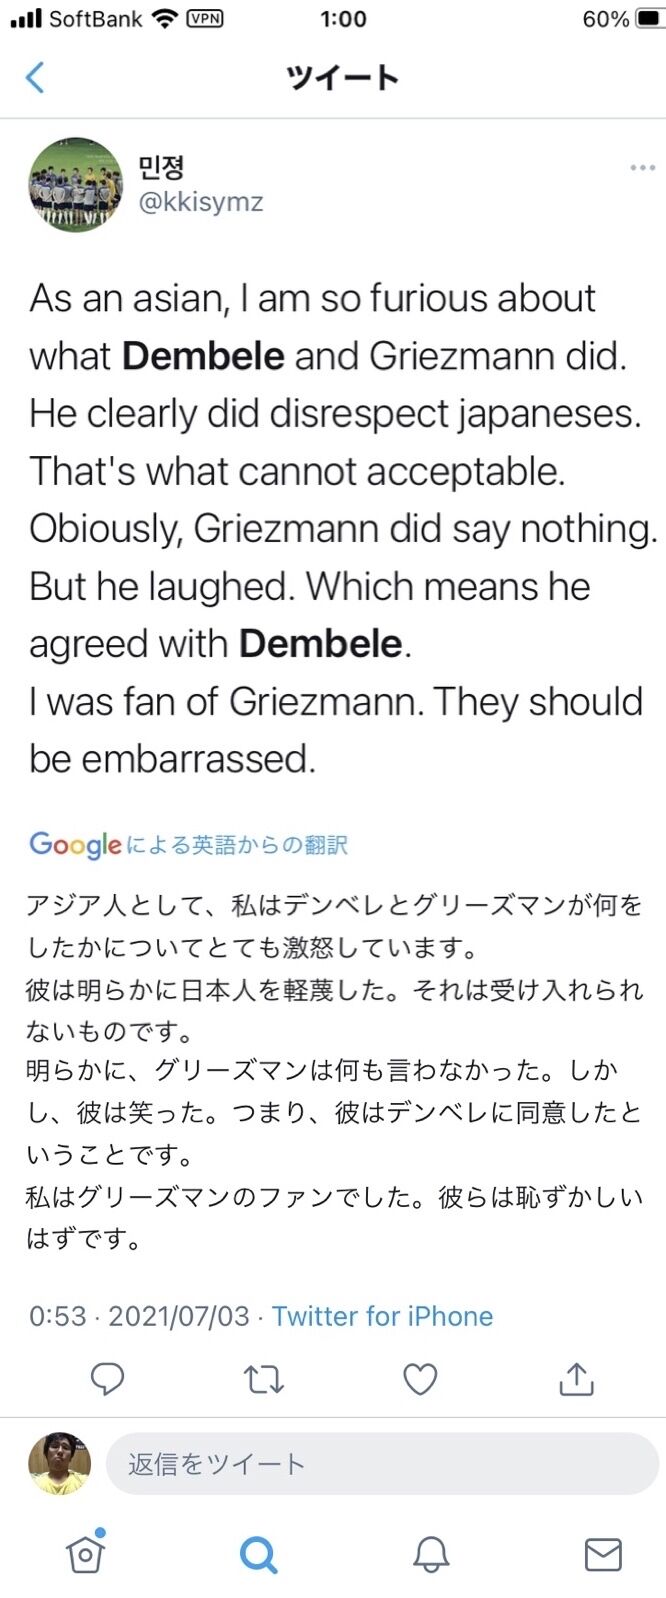 サッカー 醜い顔 グリーズマンとデンベレ 日本人への差別的動画で炎上 最速芸能丸分かりニュース